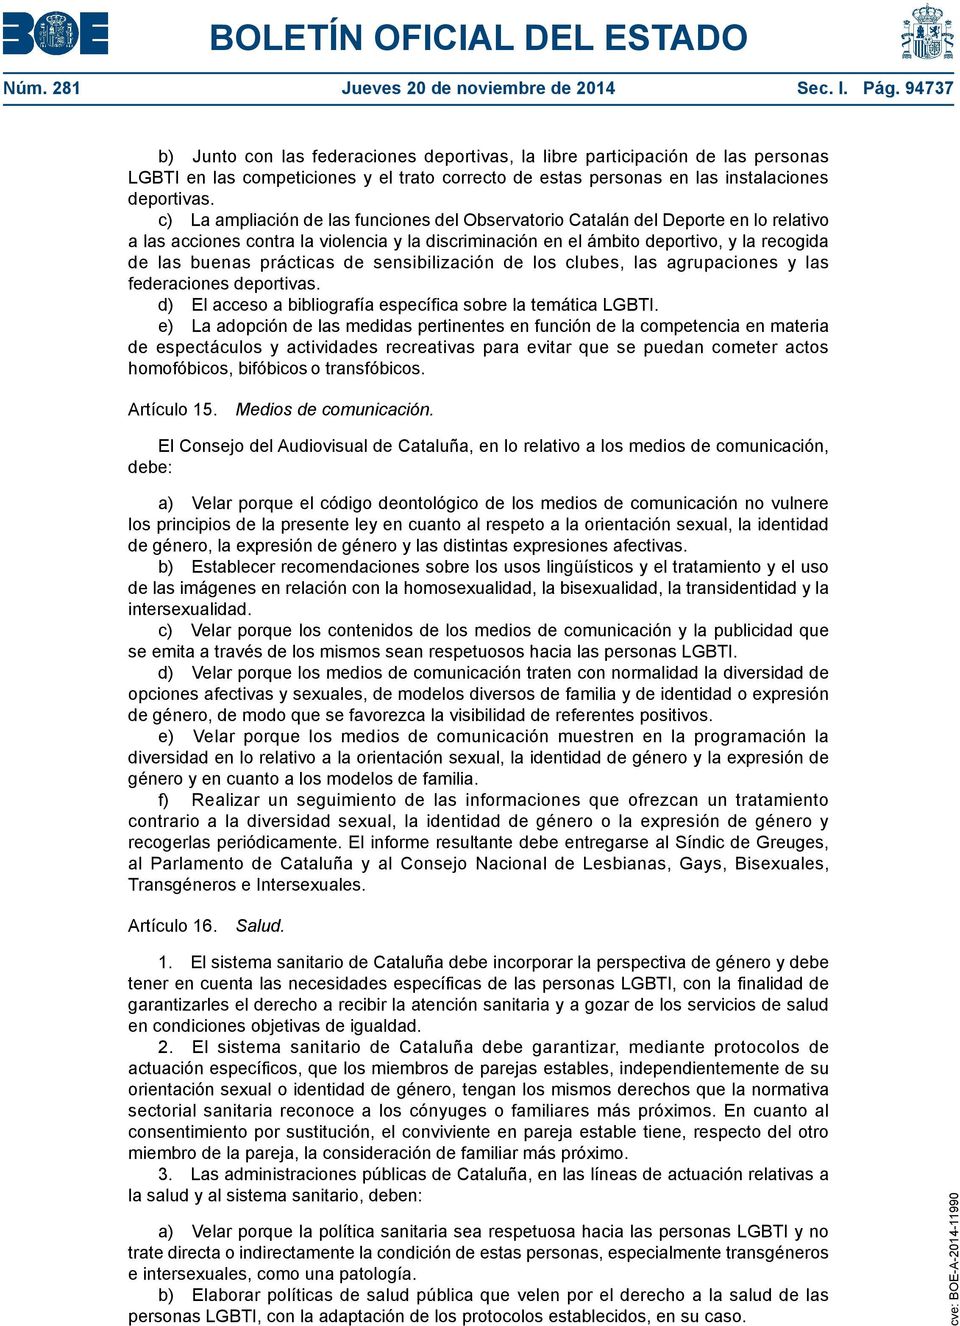 c) La ampliación de las funciones del Observatorio Catalán del Deporte en lo relativo a las acciones contra la violencia y la discriminación en el ámbito deportivo, y la recogida de las buenas